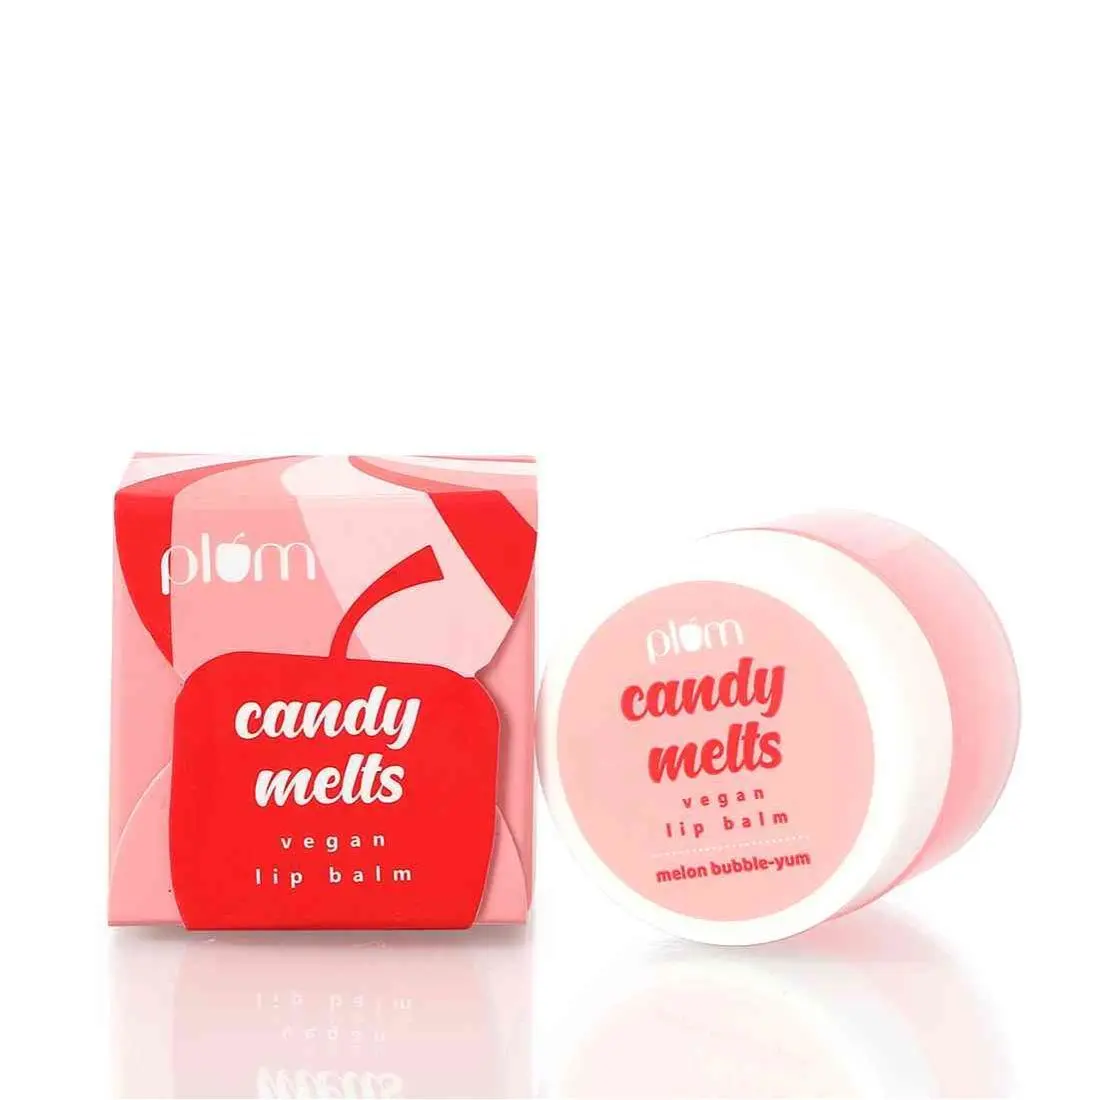 Plum Candy Melts Vegan Lip Balm | Melon Bubble-yum (12 g)